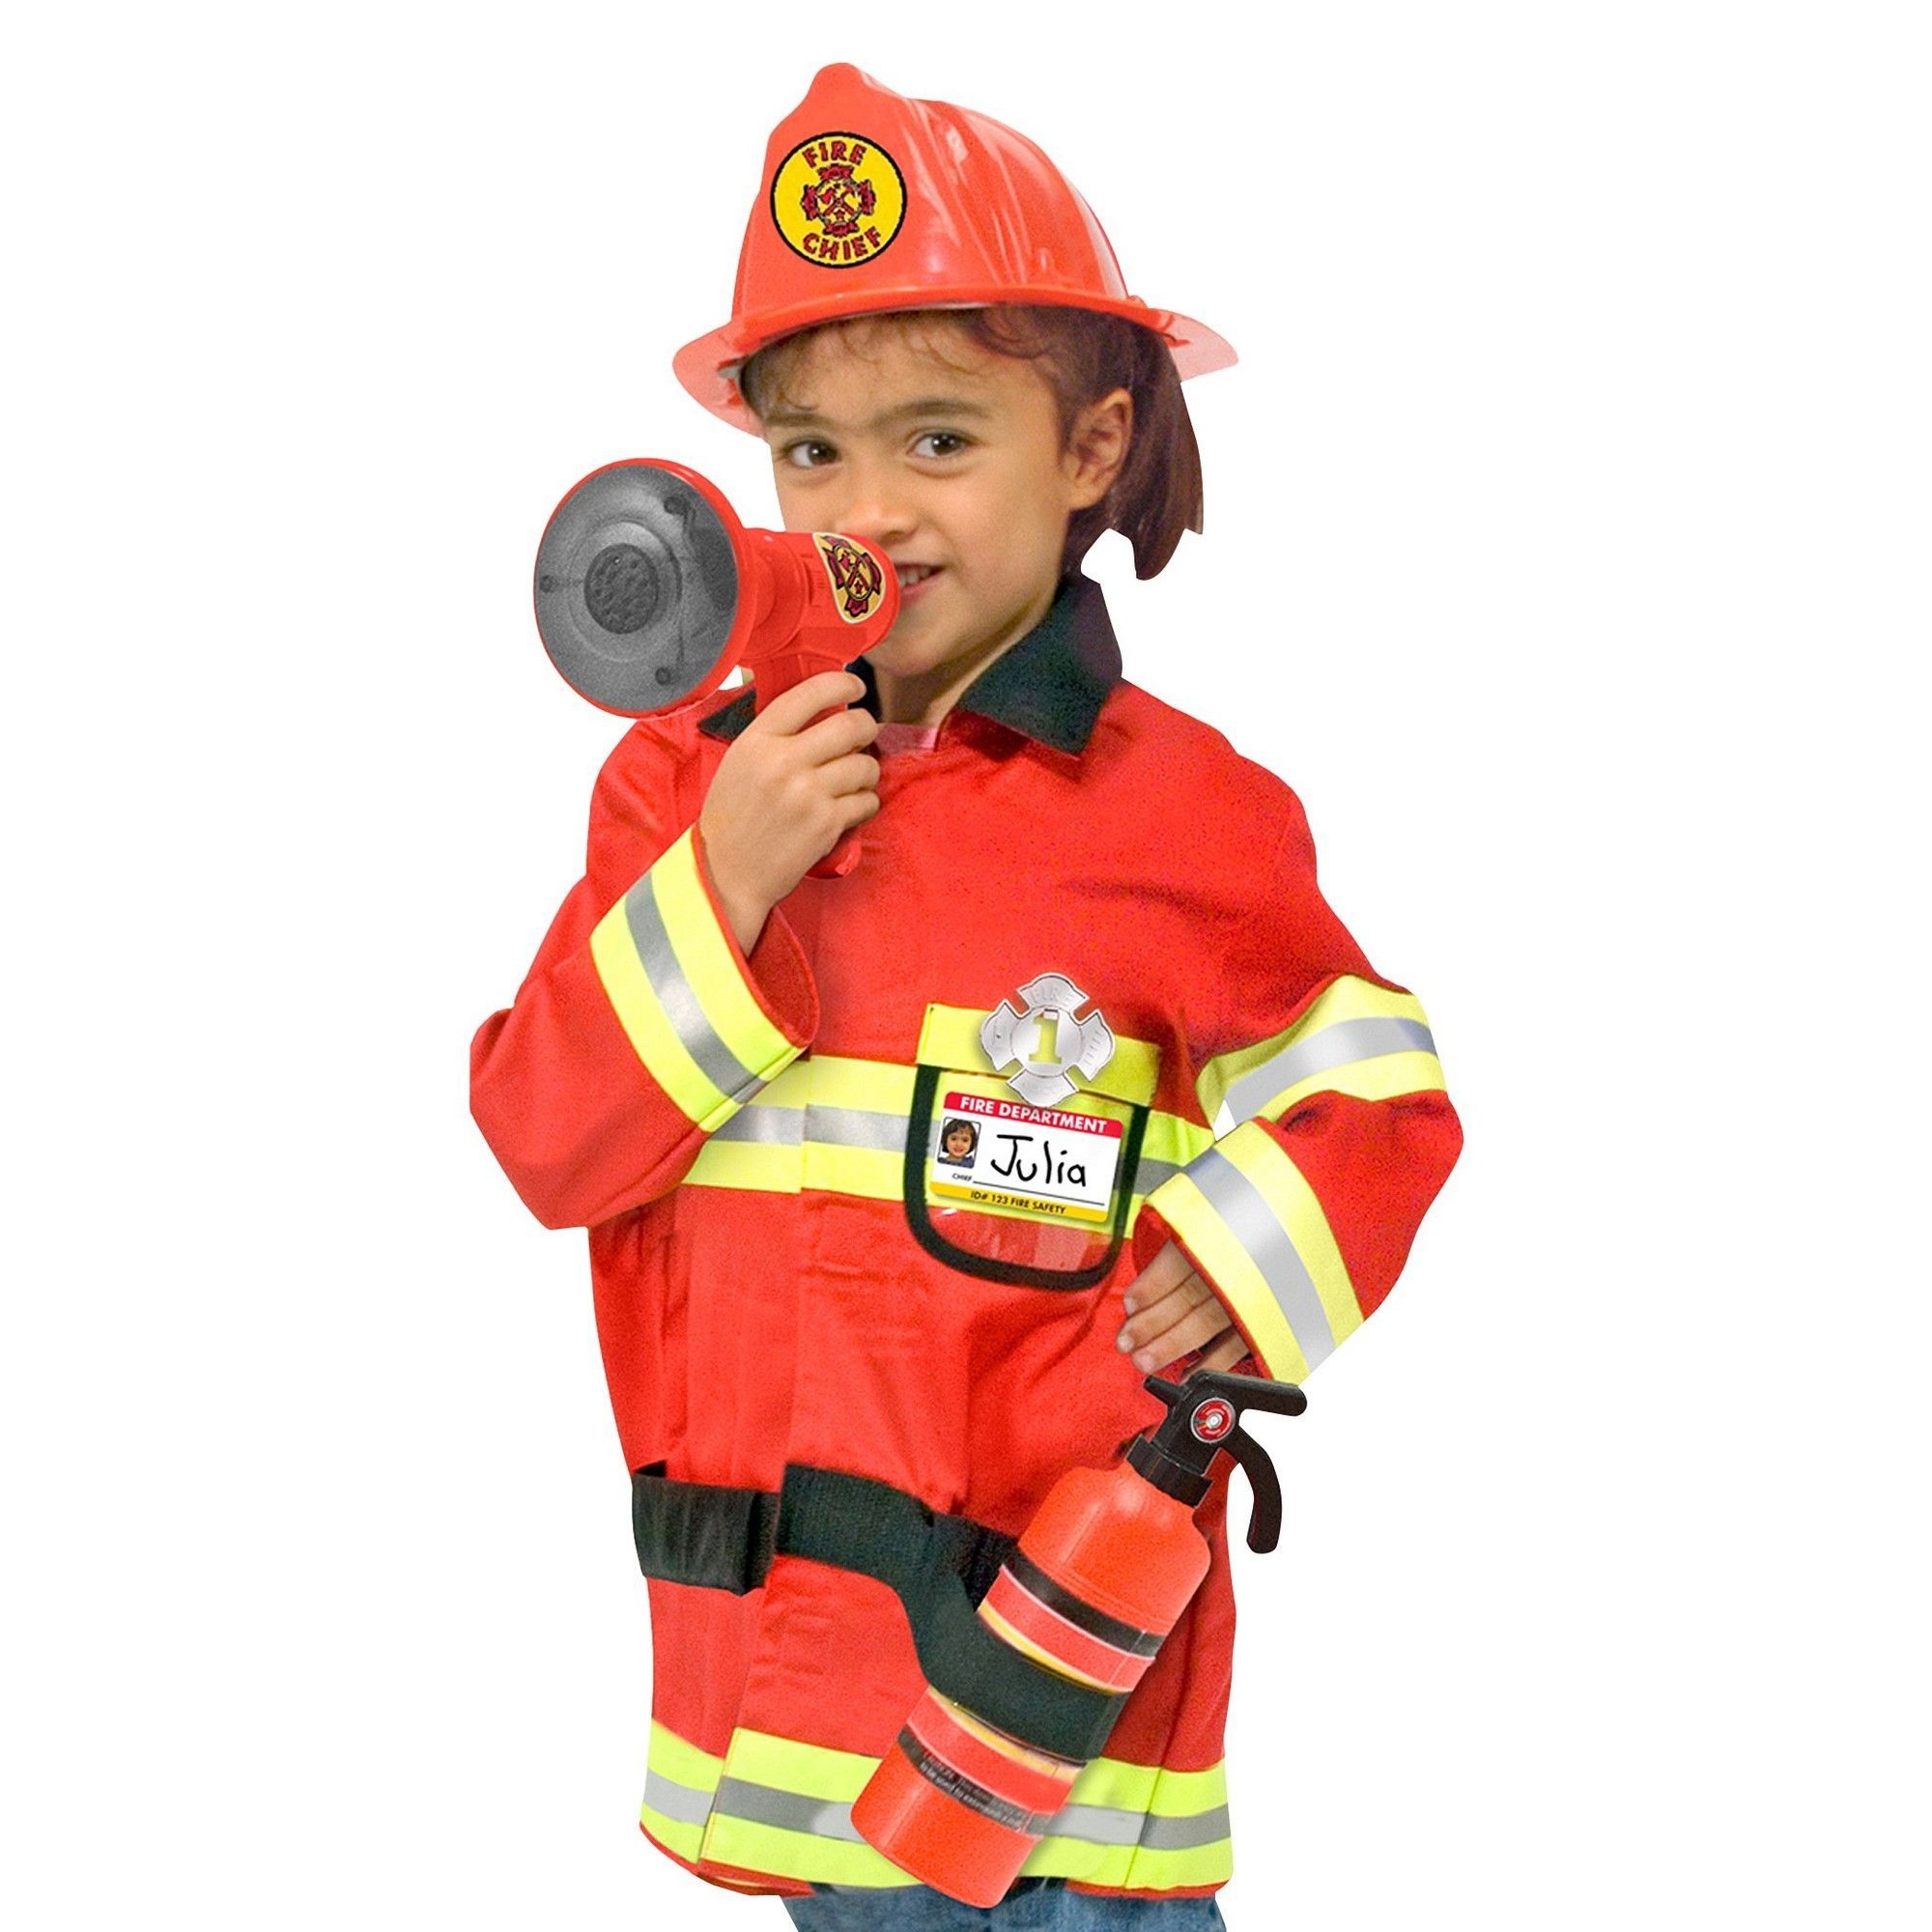 Как выглядит пожарник. Костюм Melissa&Doug пожарный. Костюм пожарника Сэма. Пожарный костюм для детей для детей. Малыш в костюме пожарного.